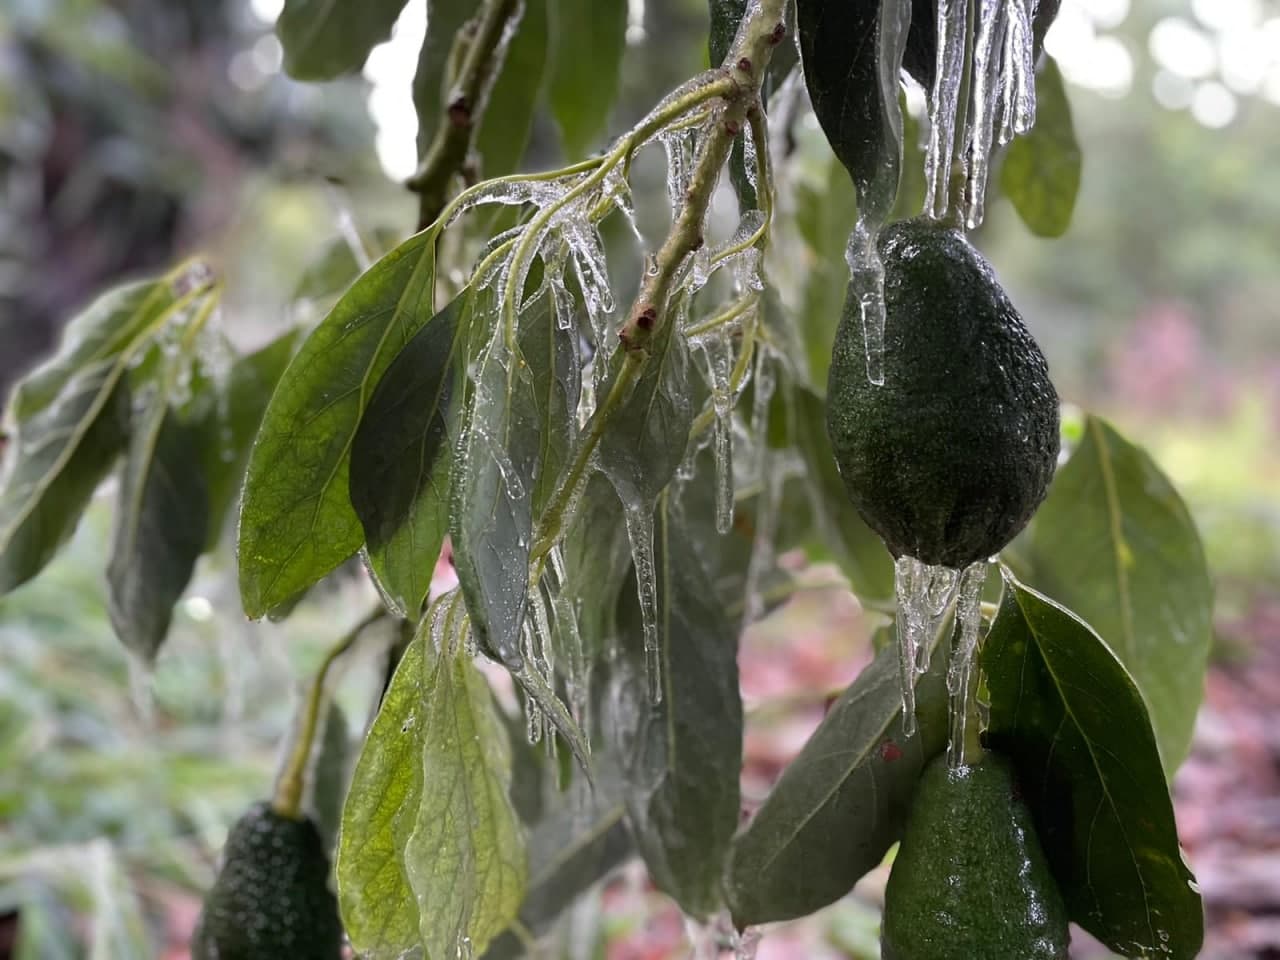 מגדלי הפירות בהרי הגליל והגולן מרוצים מהטמפרטורות הנמוכות אך מגדלי האבוקדו חוששים מהקרה